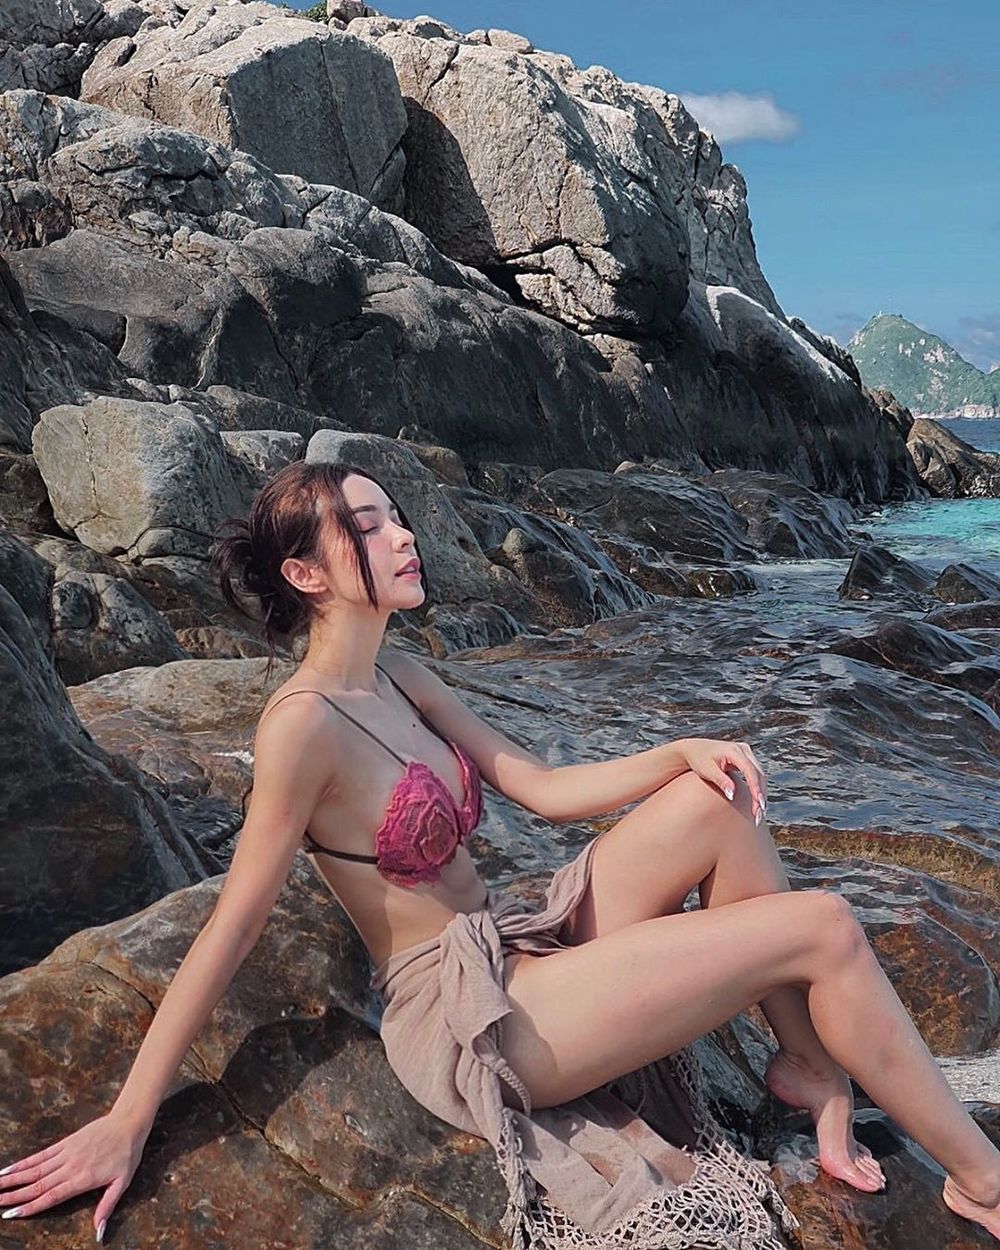  
Mlee khoe dáng với bikini trên biển, thân hình nuột nà của ca sĩ tôn lên vẻ đẹp của thiên nhiên (Ảnh: Instagram nhân vật)